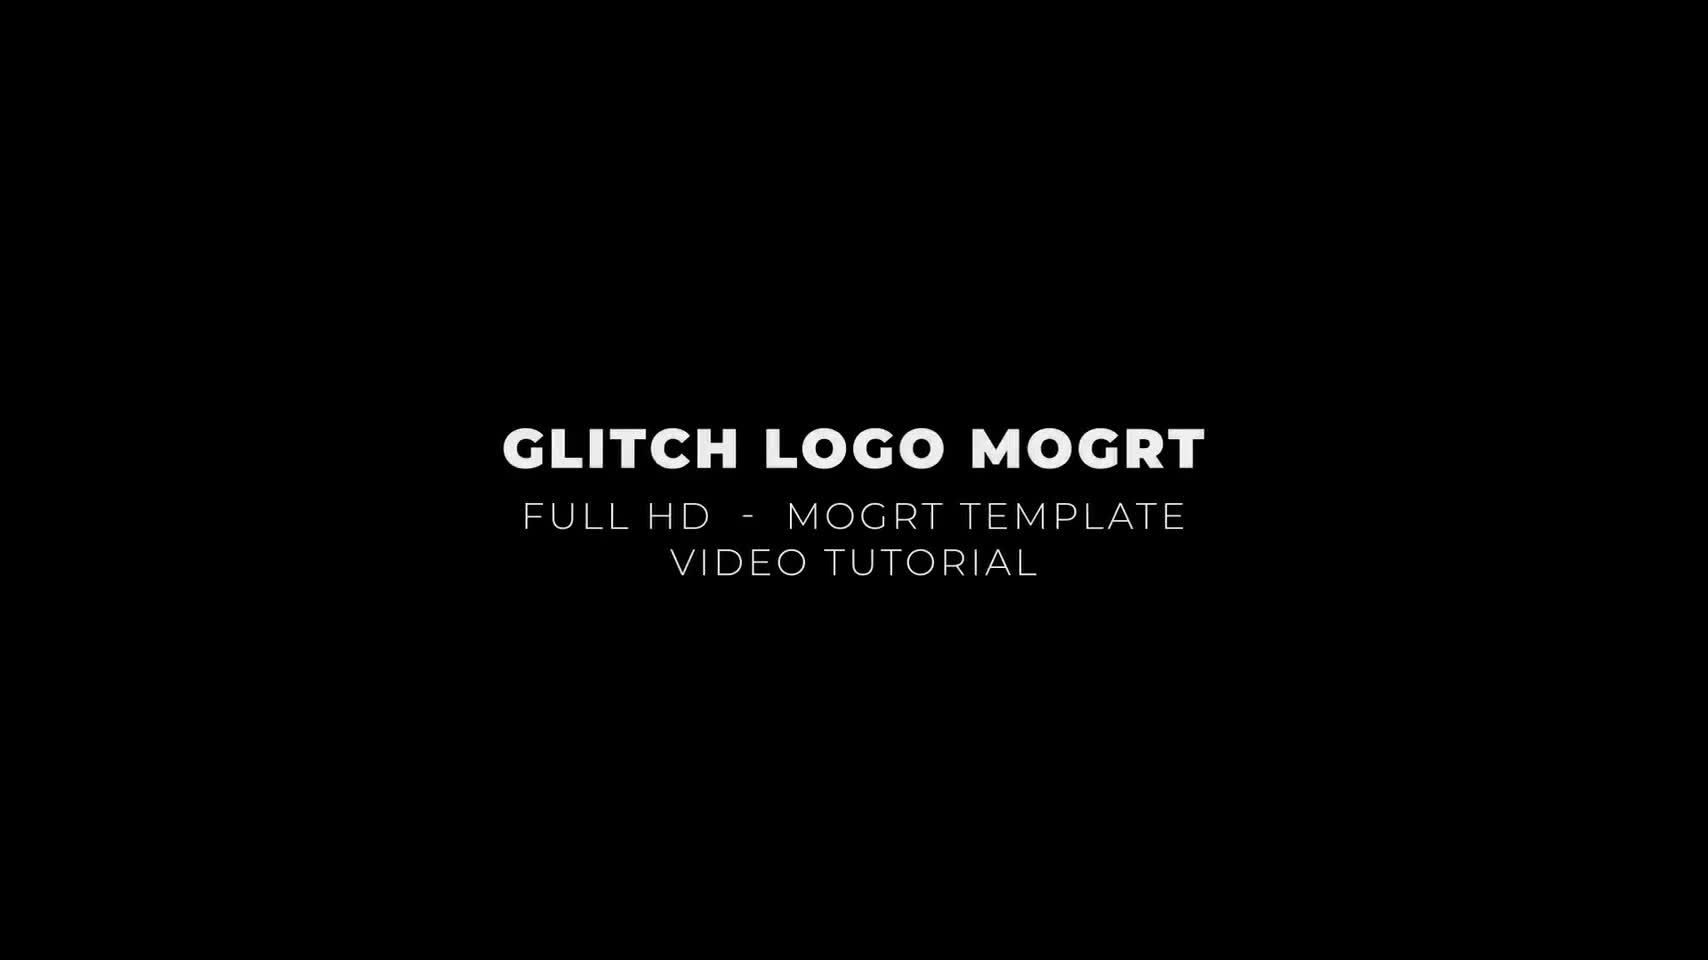 Glitch Logo Mogrt Videohive 24311897 Premiere Pro Image 1